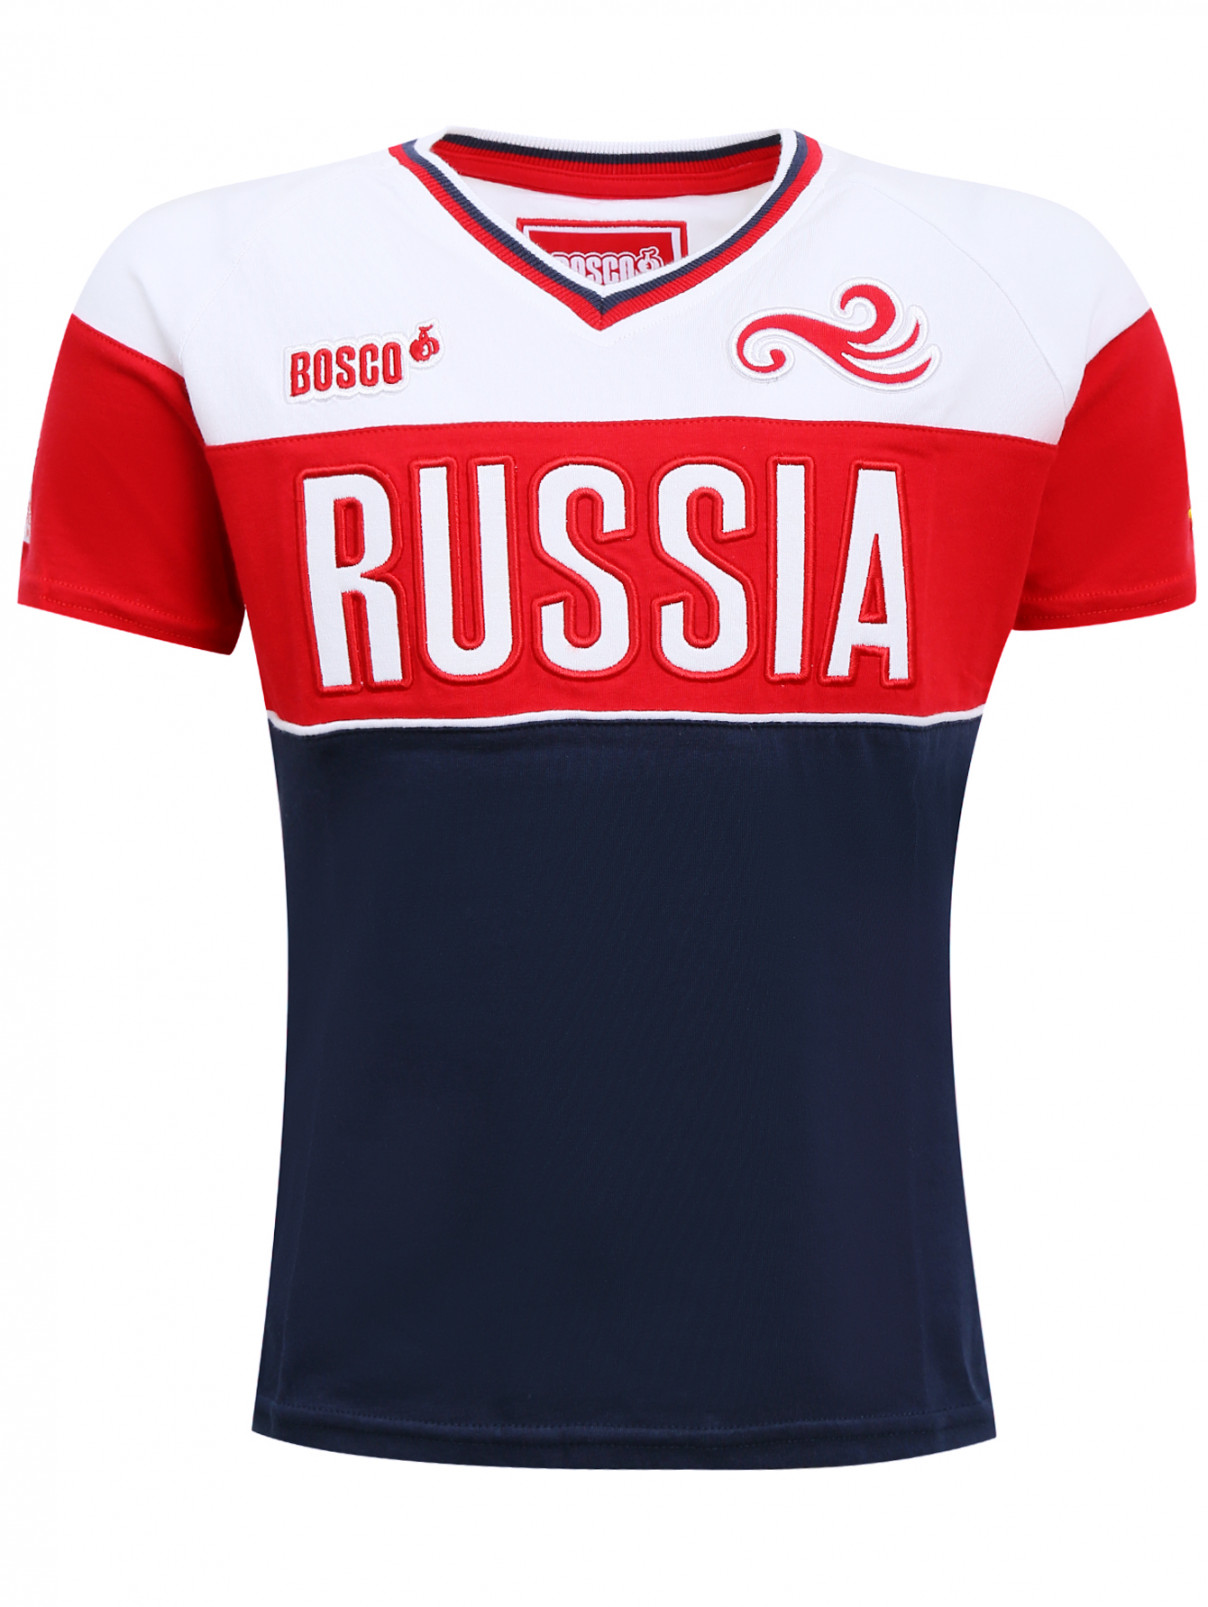 Футболка из хлопка с вышивкой Sochi 2014  –  Общий вид  – Цвет:  Мультиколор